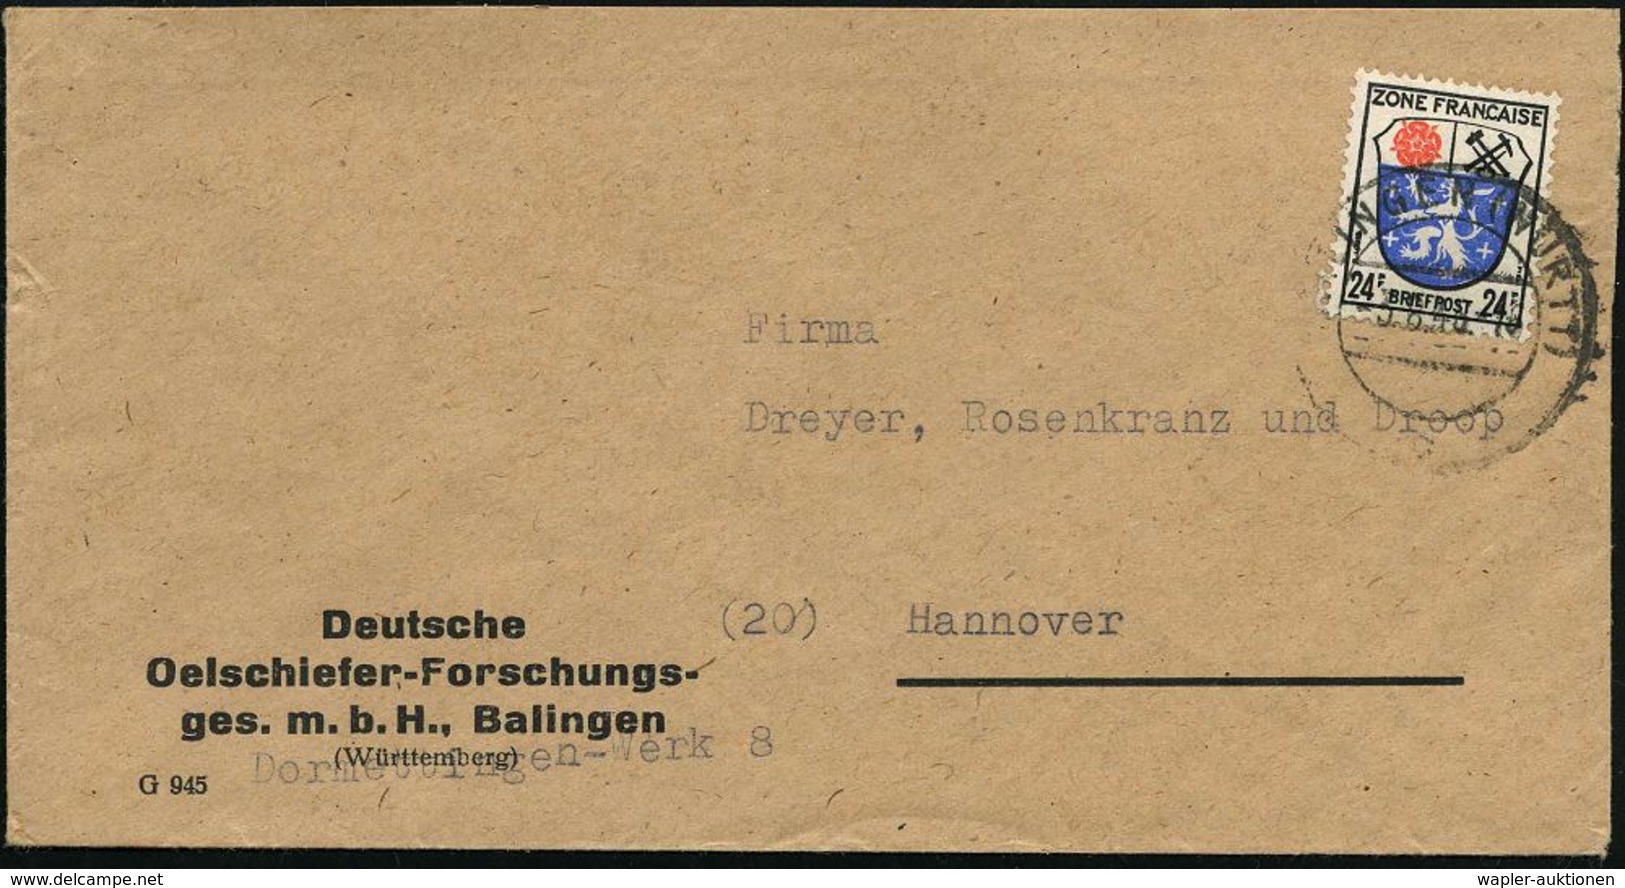 ERDÖL / PROSPEKTIERUNG & GEWINNUNG : BALINGEN (WÜRTT)/ C 1946 (3.8.) 2-Steg Auf Firmen-Bf.: Deutsches Oelschiefer-Forsch - Erdöl